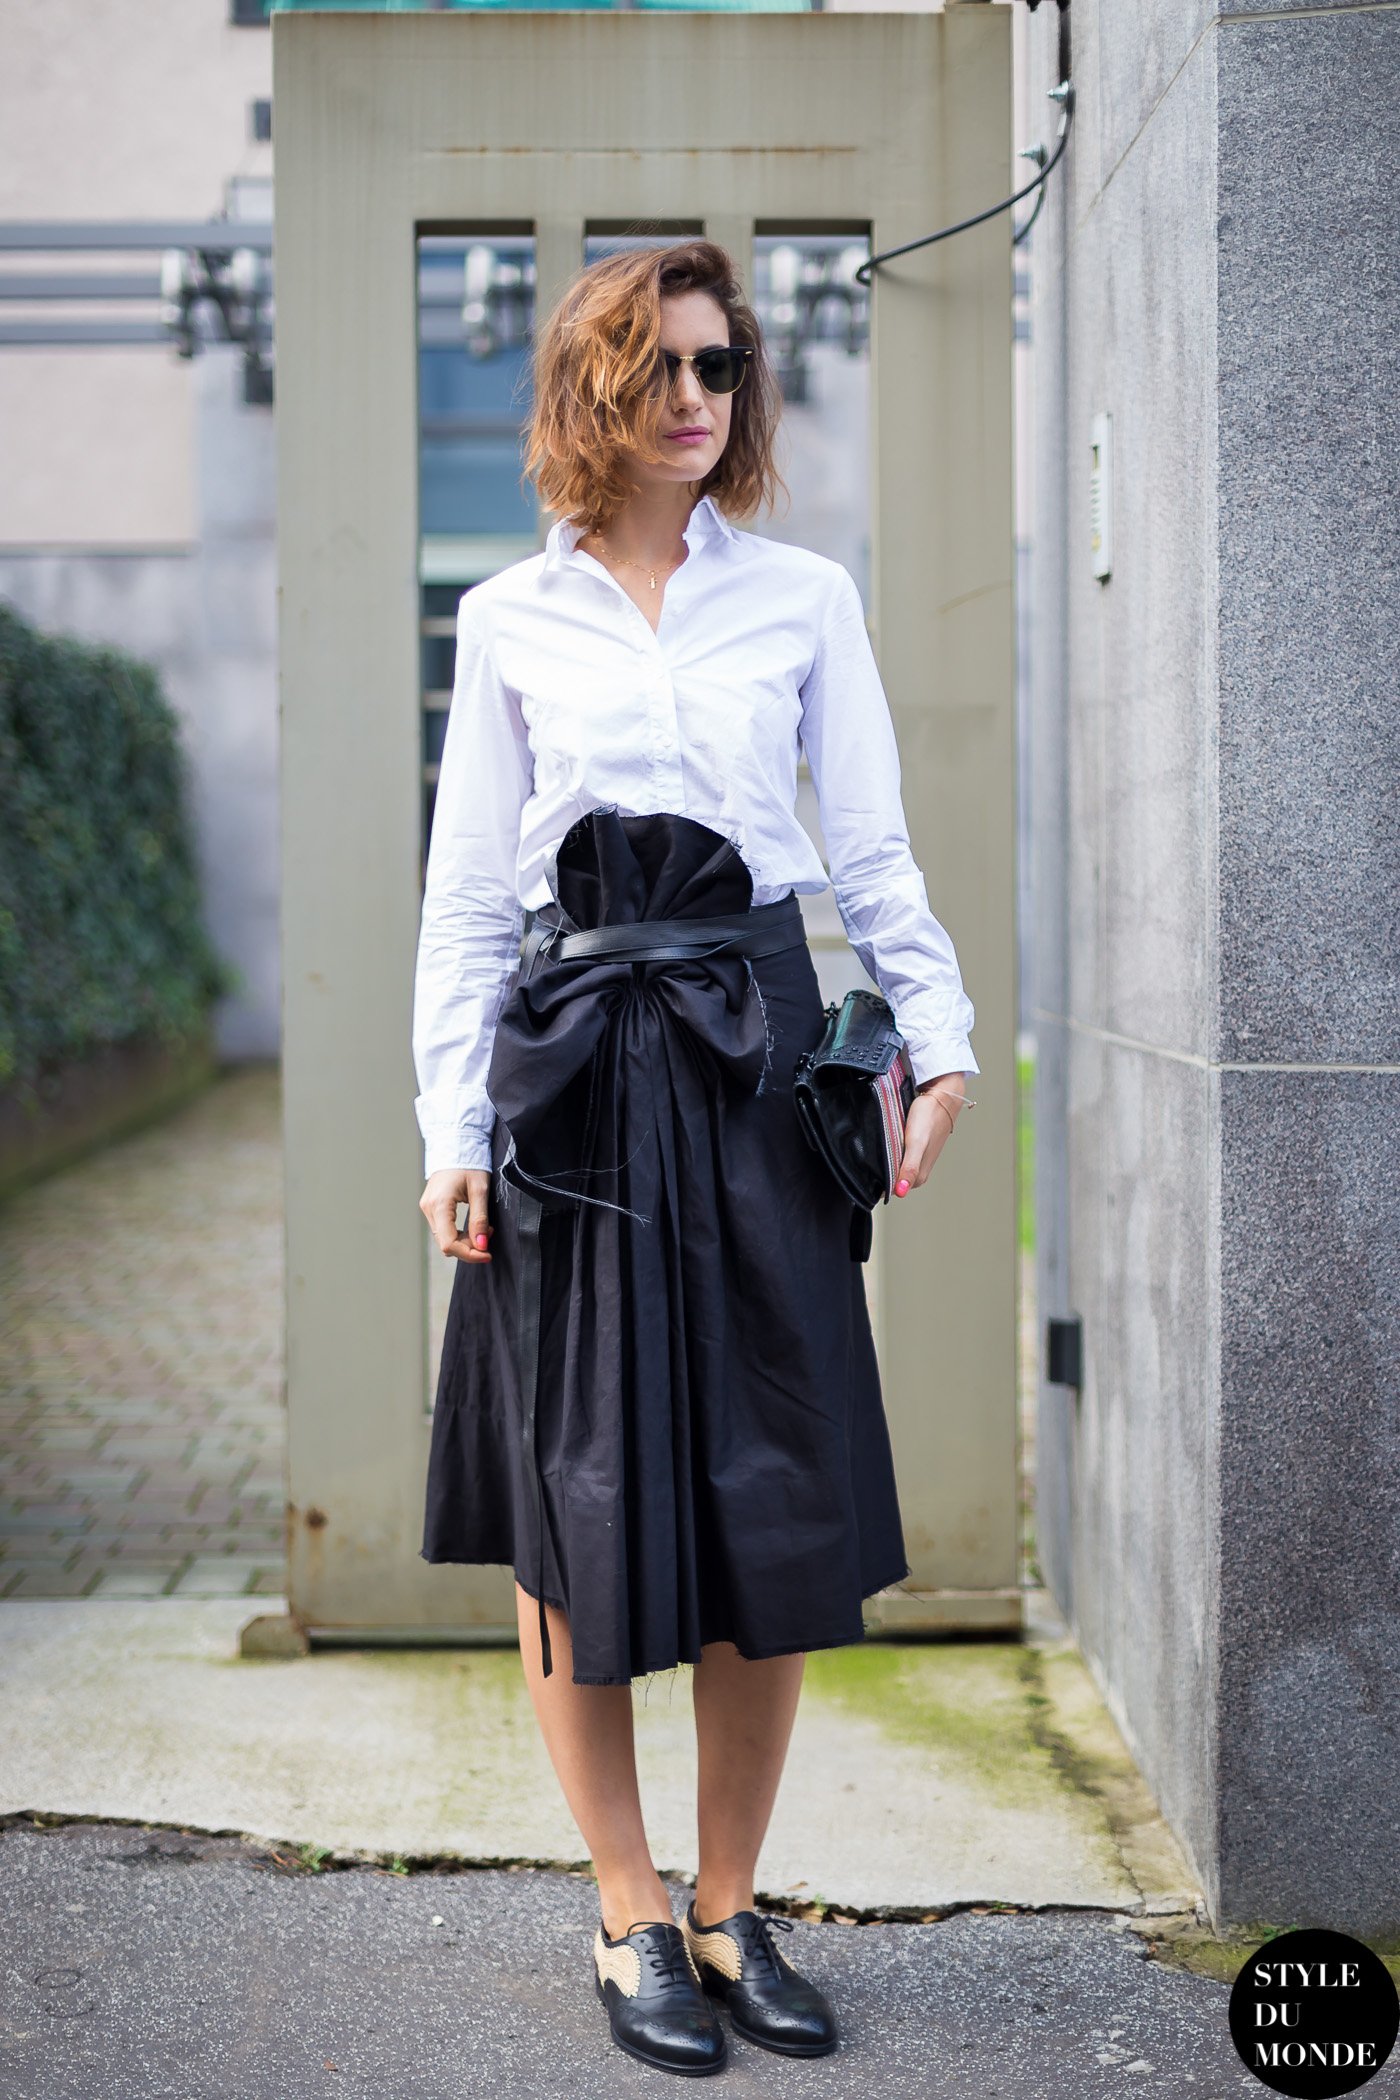 Milan Fashion Week FW 2014 Street Style: After Bottega Veneta - STYLE